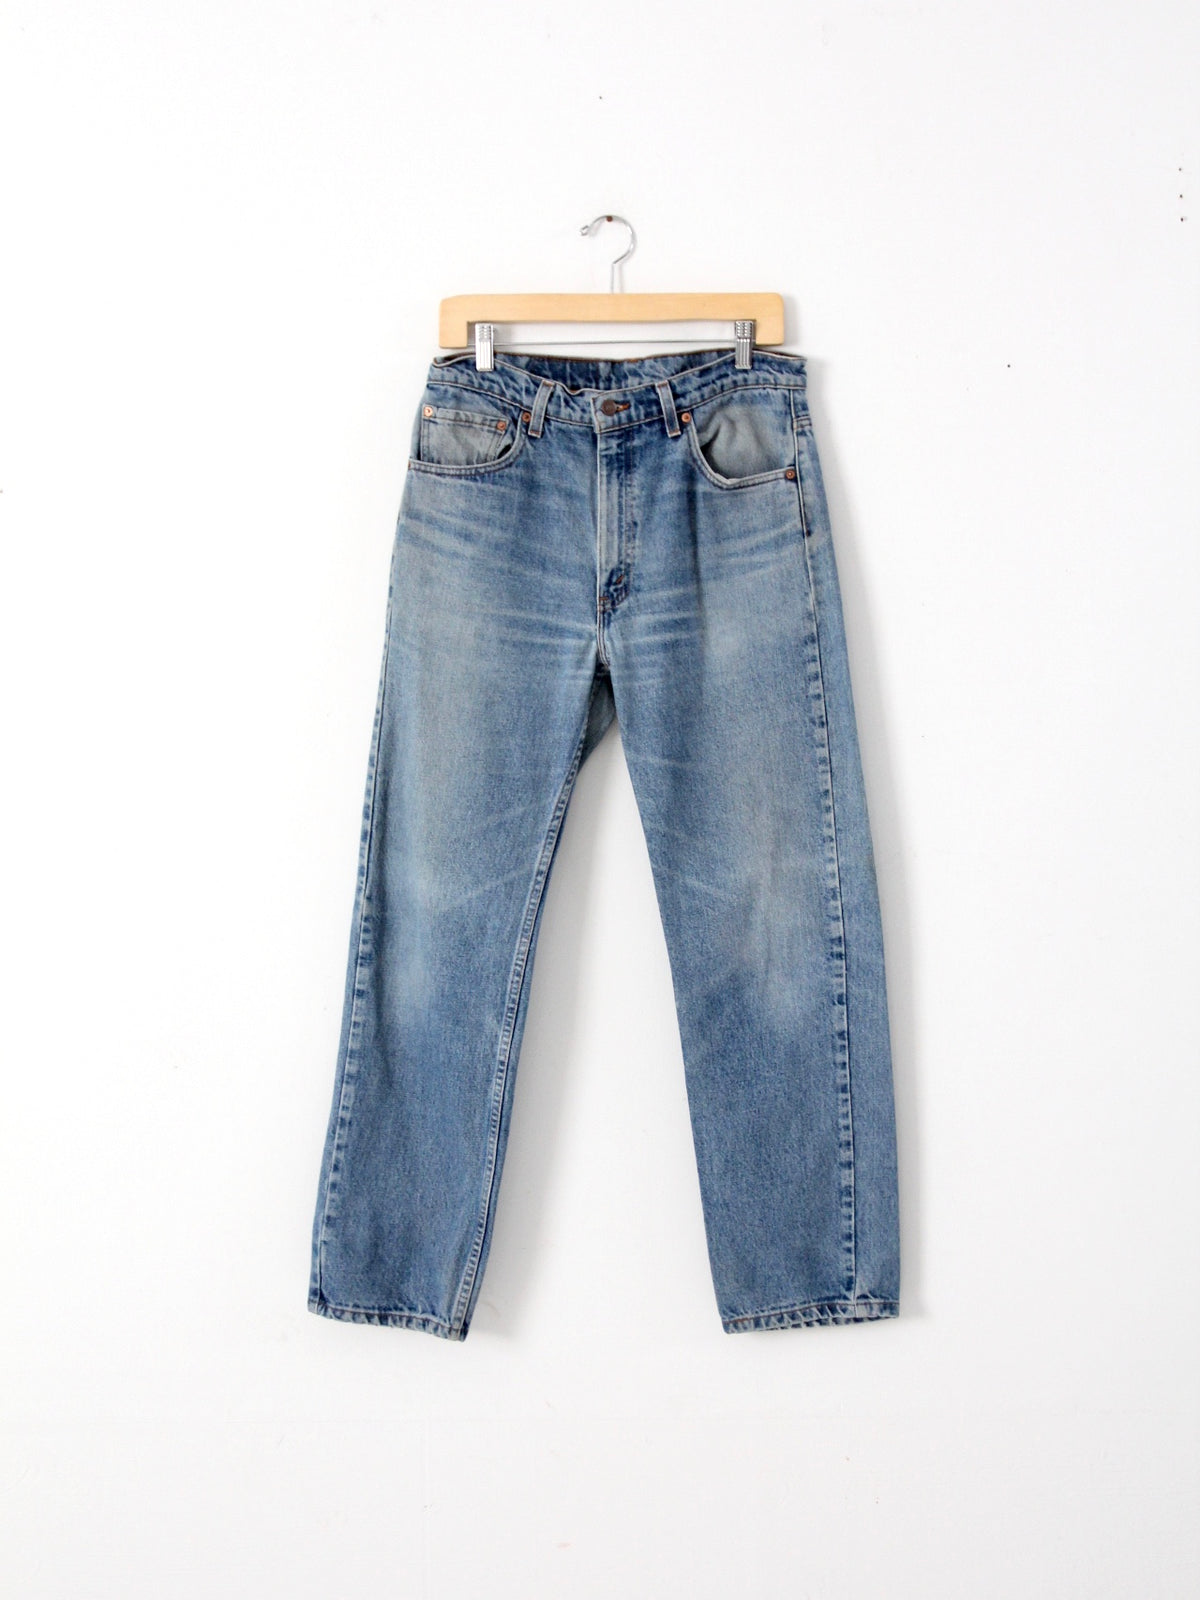 vintage Levis 505 jeans